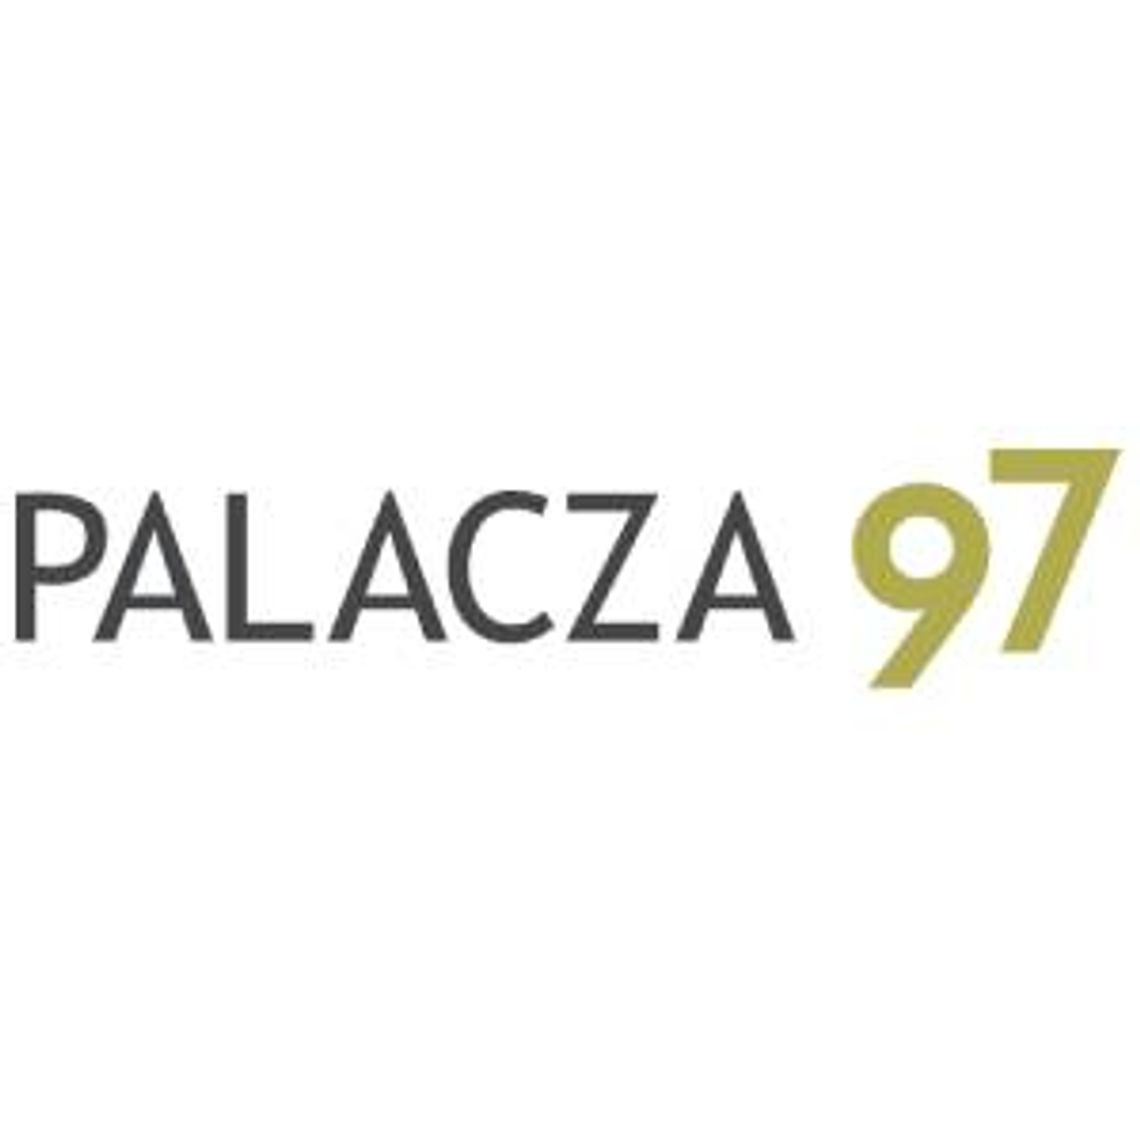 Mieszkania na sprzedaż Poznań - Palacza 97